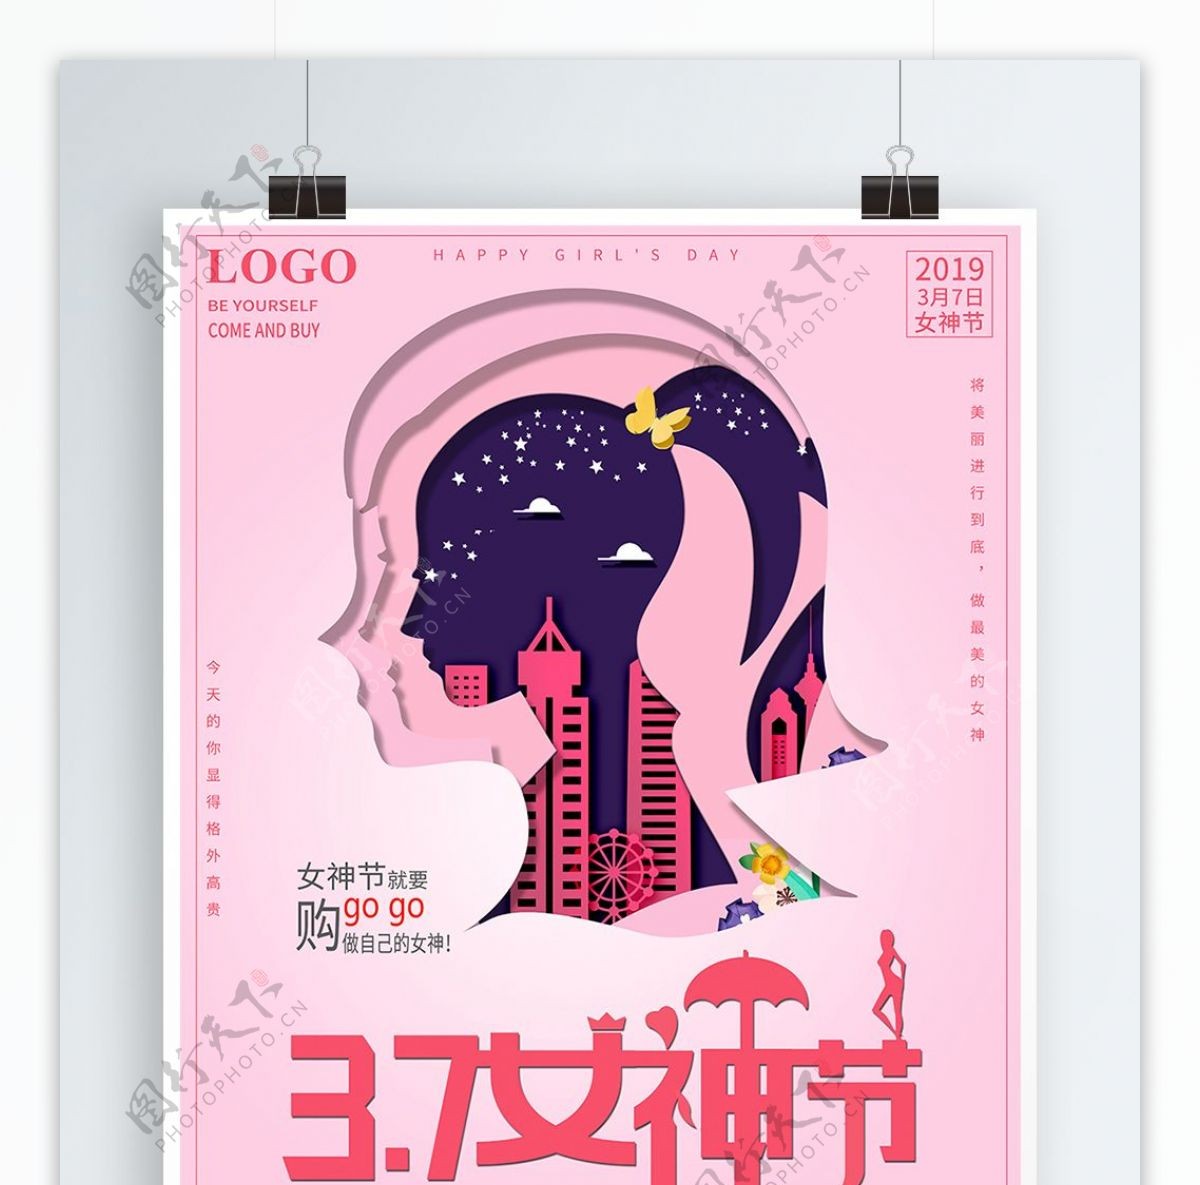 剪纸粉色3.7女神节促销宣传海报